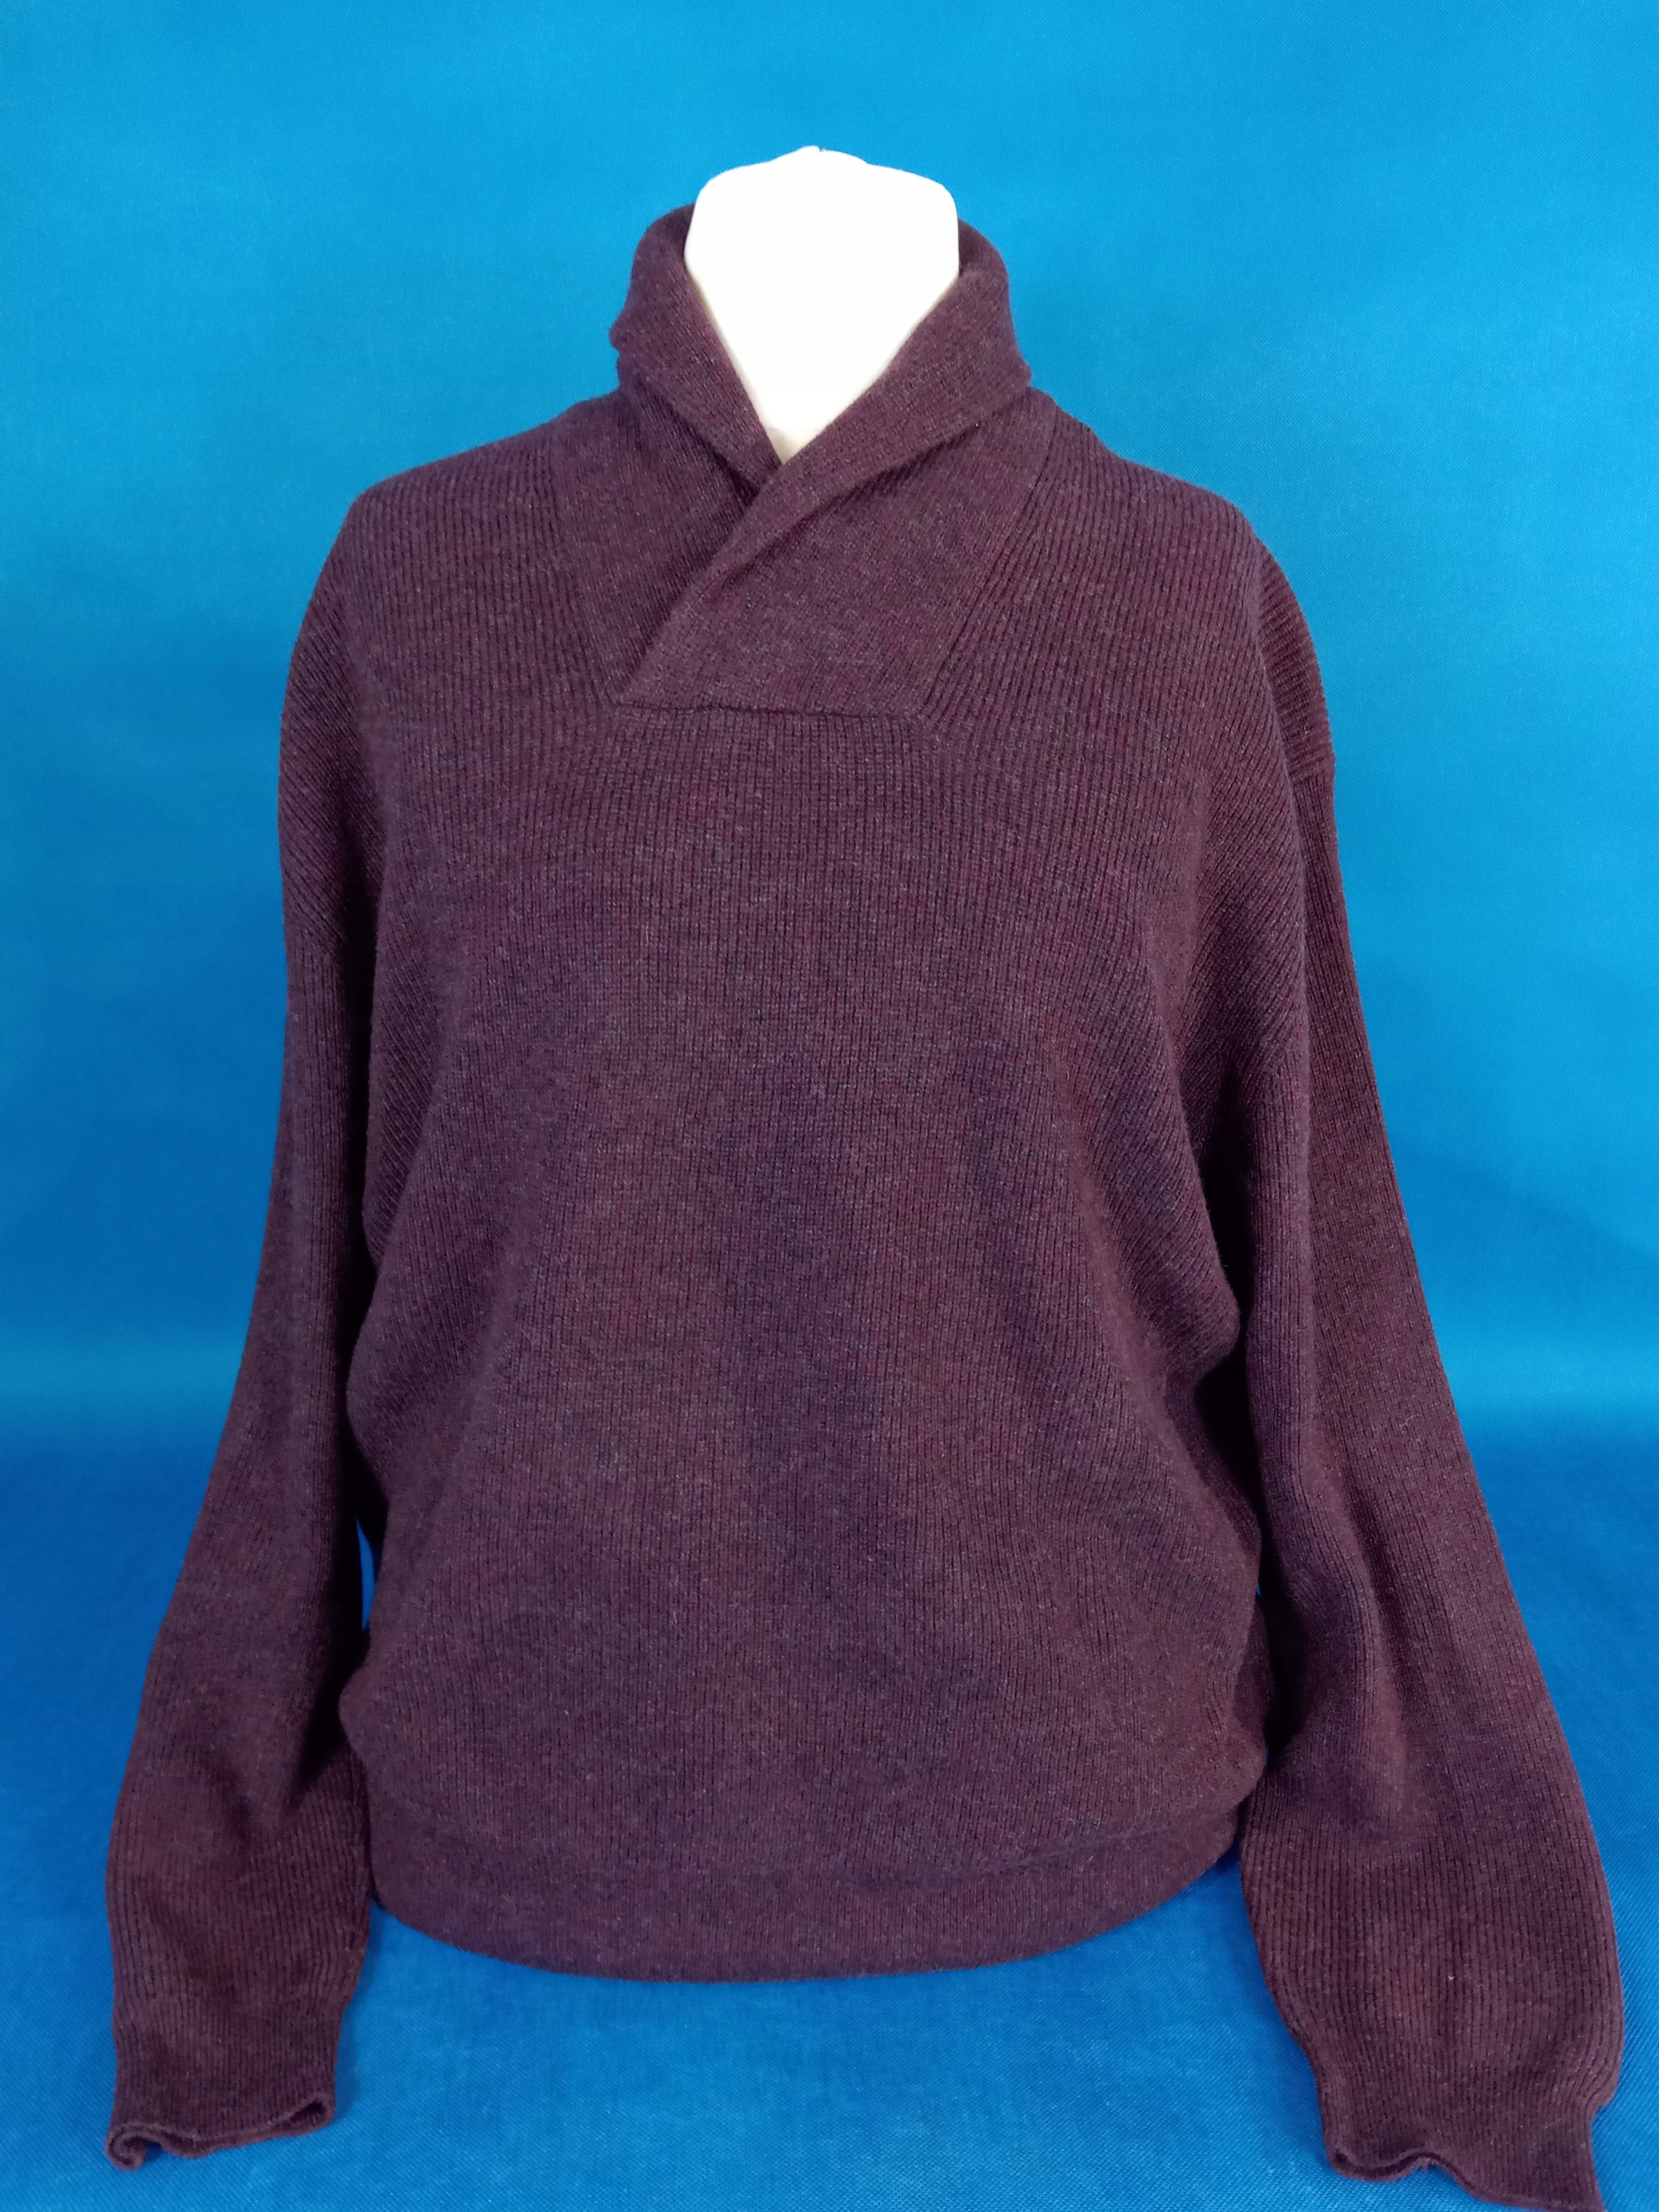 Moda Swetry Kaszmirowe swetry Chinti and parker Kaszmirowy sweter czarny-w kolorze bia\u0142ej we\u0142ny 